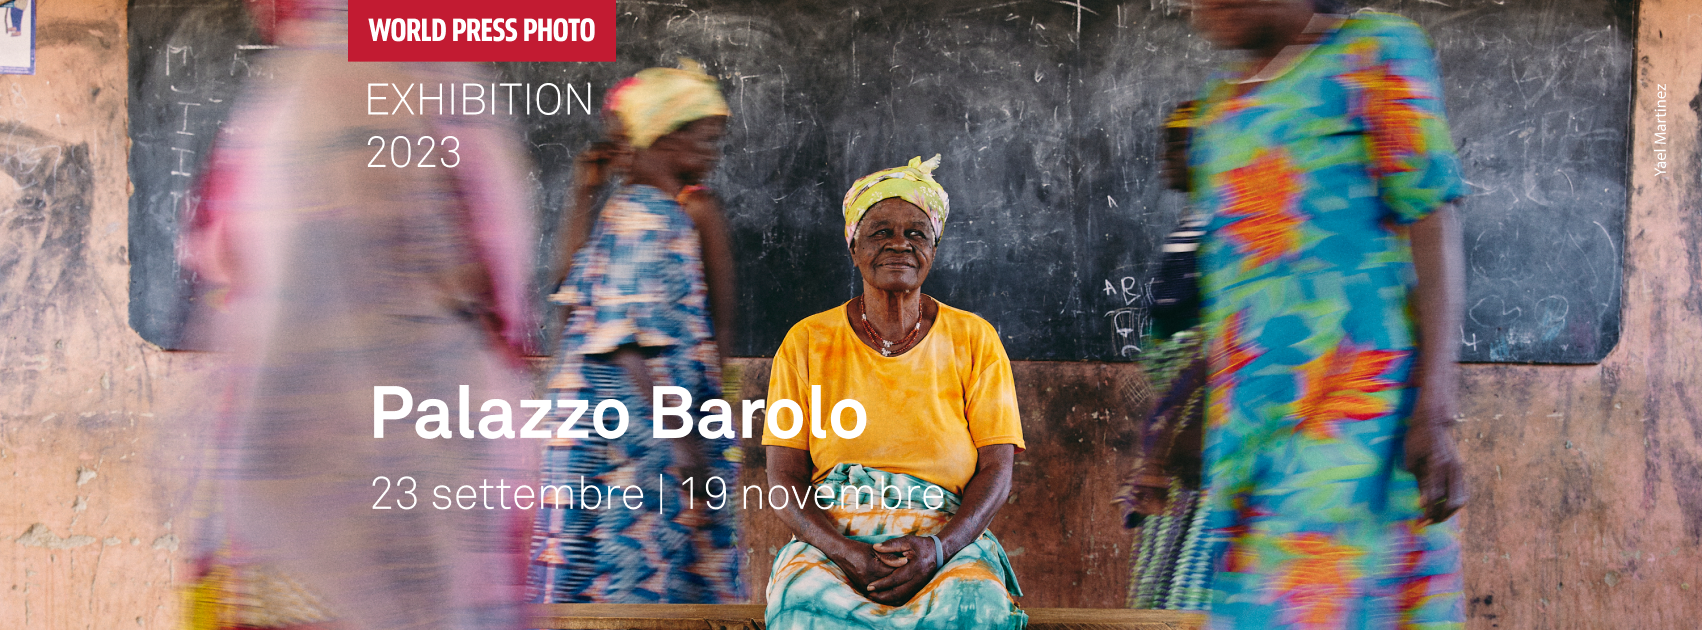 World Press Photo Exhibition 2023 a Palazzo Barolo a Torino